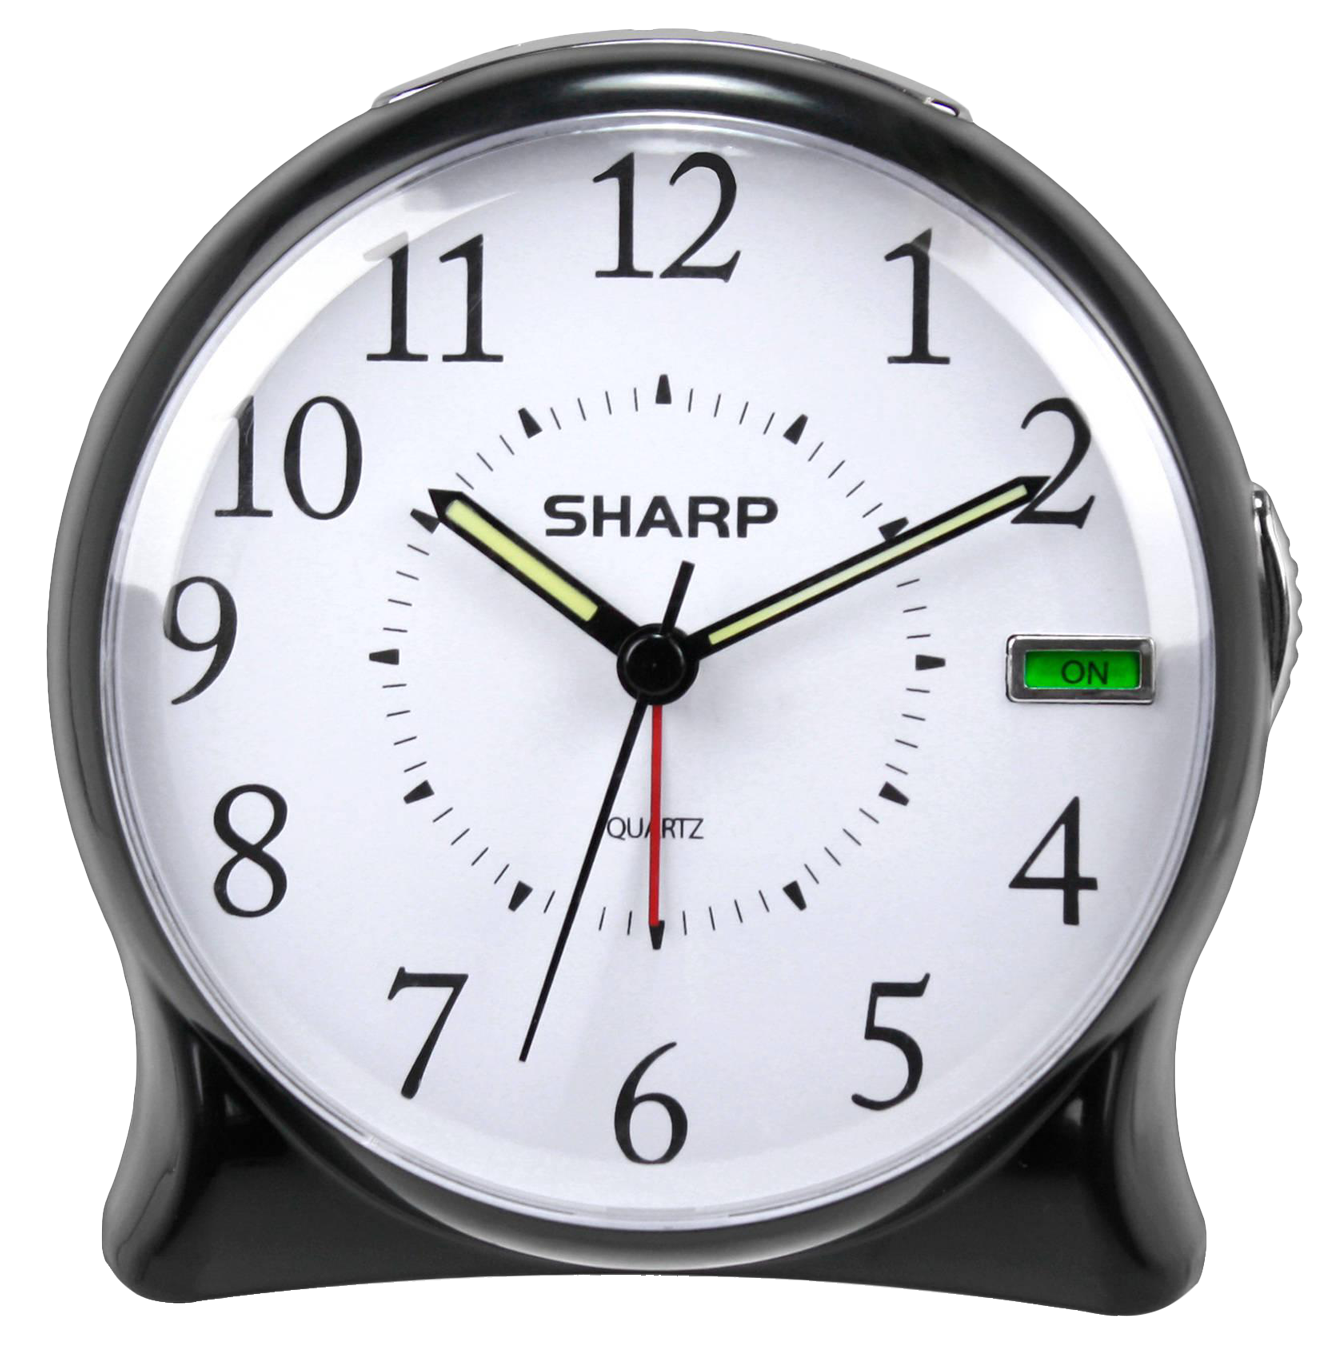 Analog Alarm Clock PNG Image